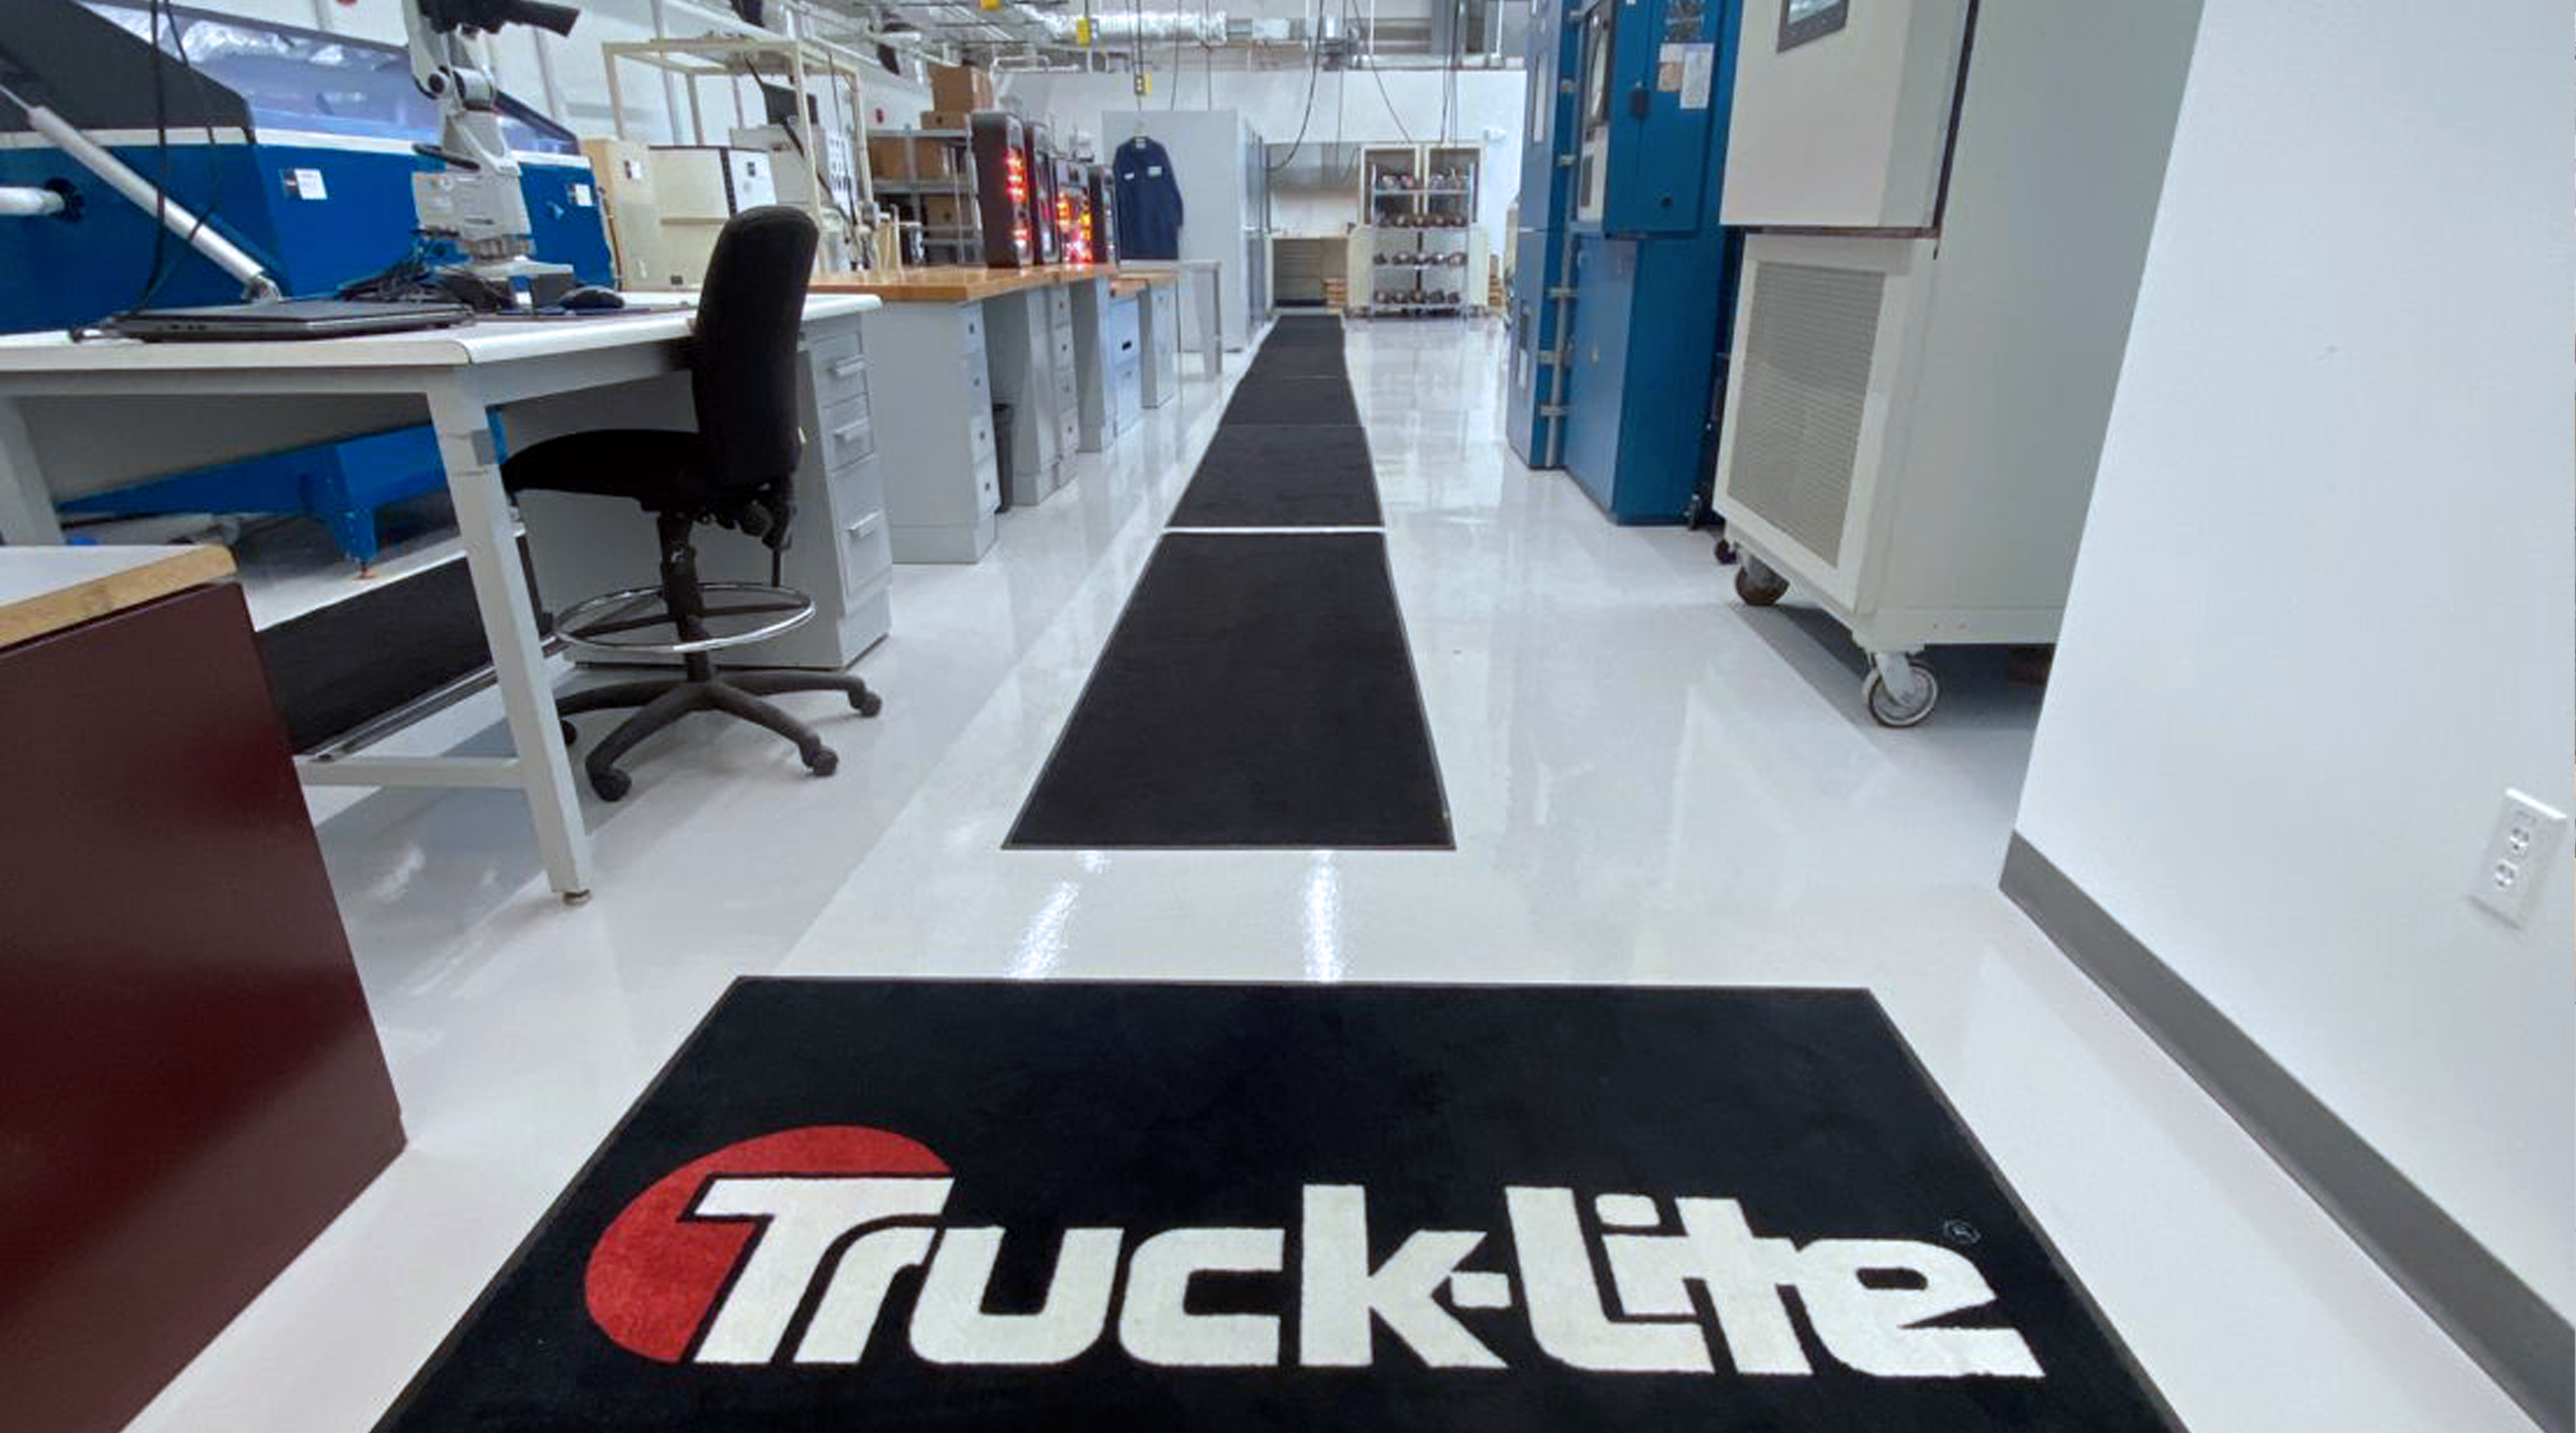 Truck-Lite Lab